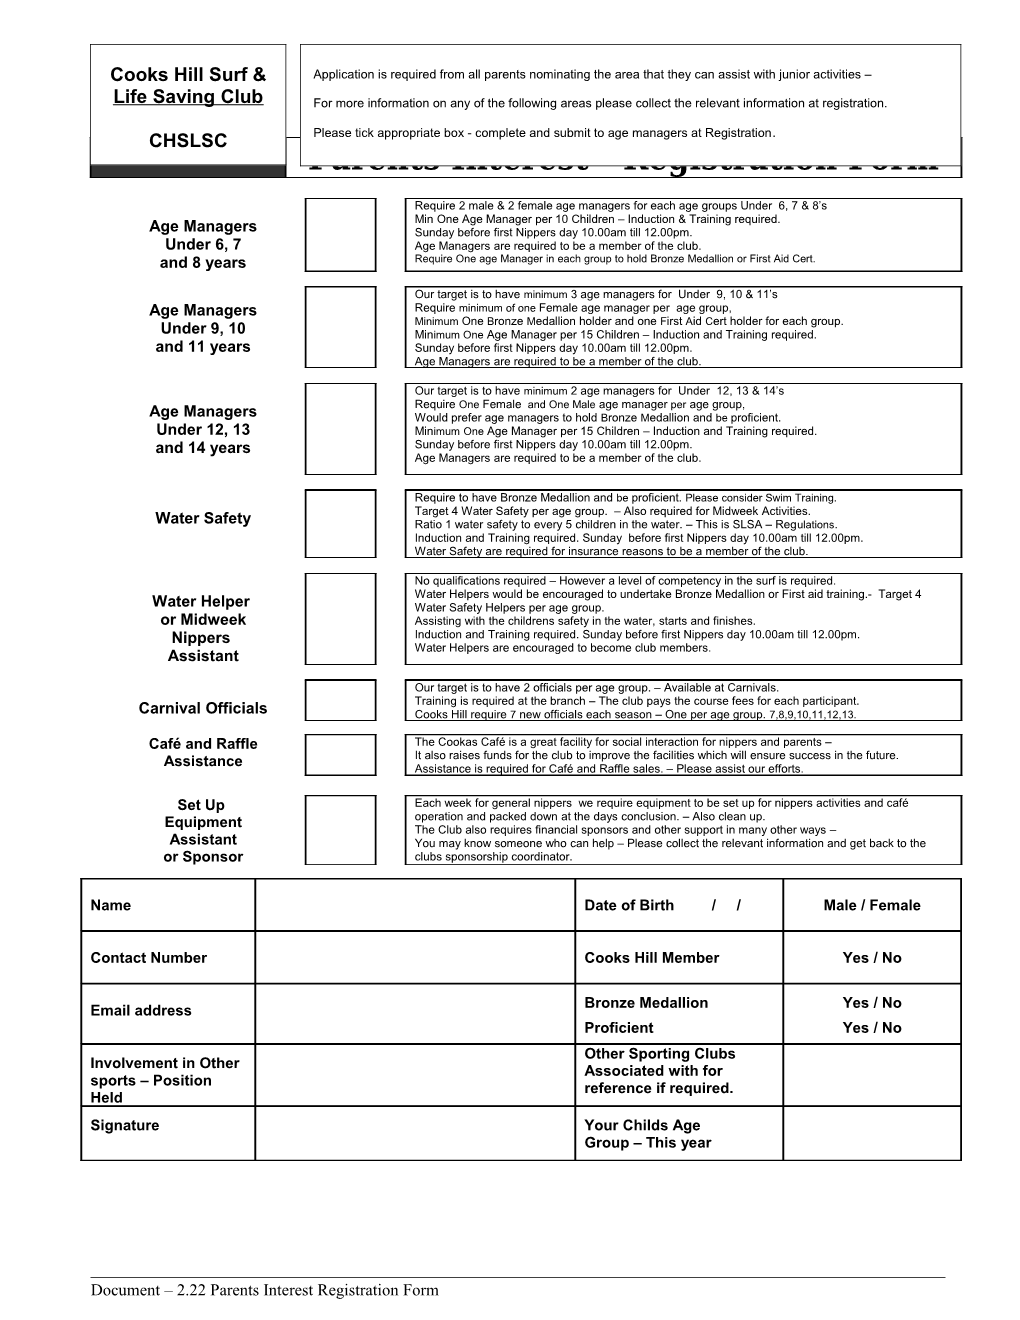 Document 2.22 Parents Interest Registration Form